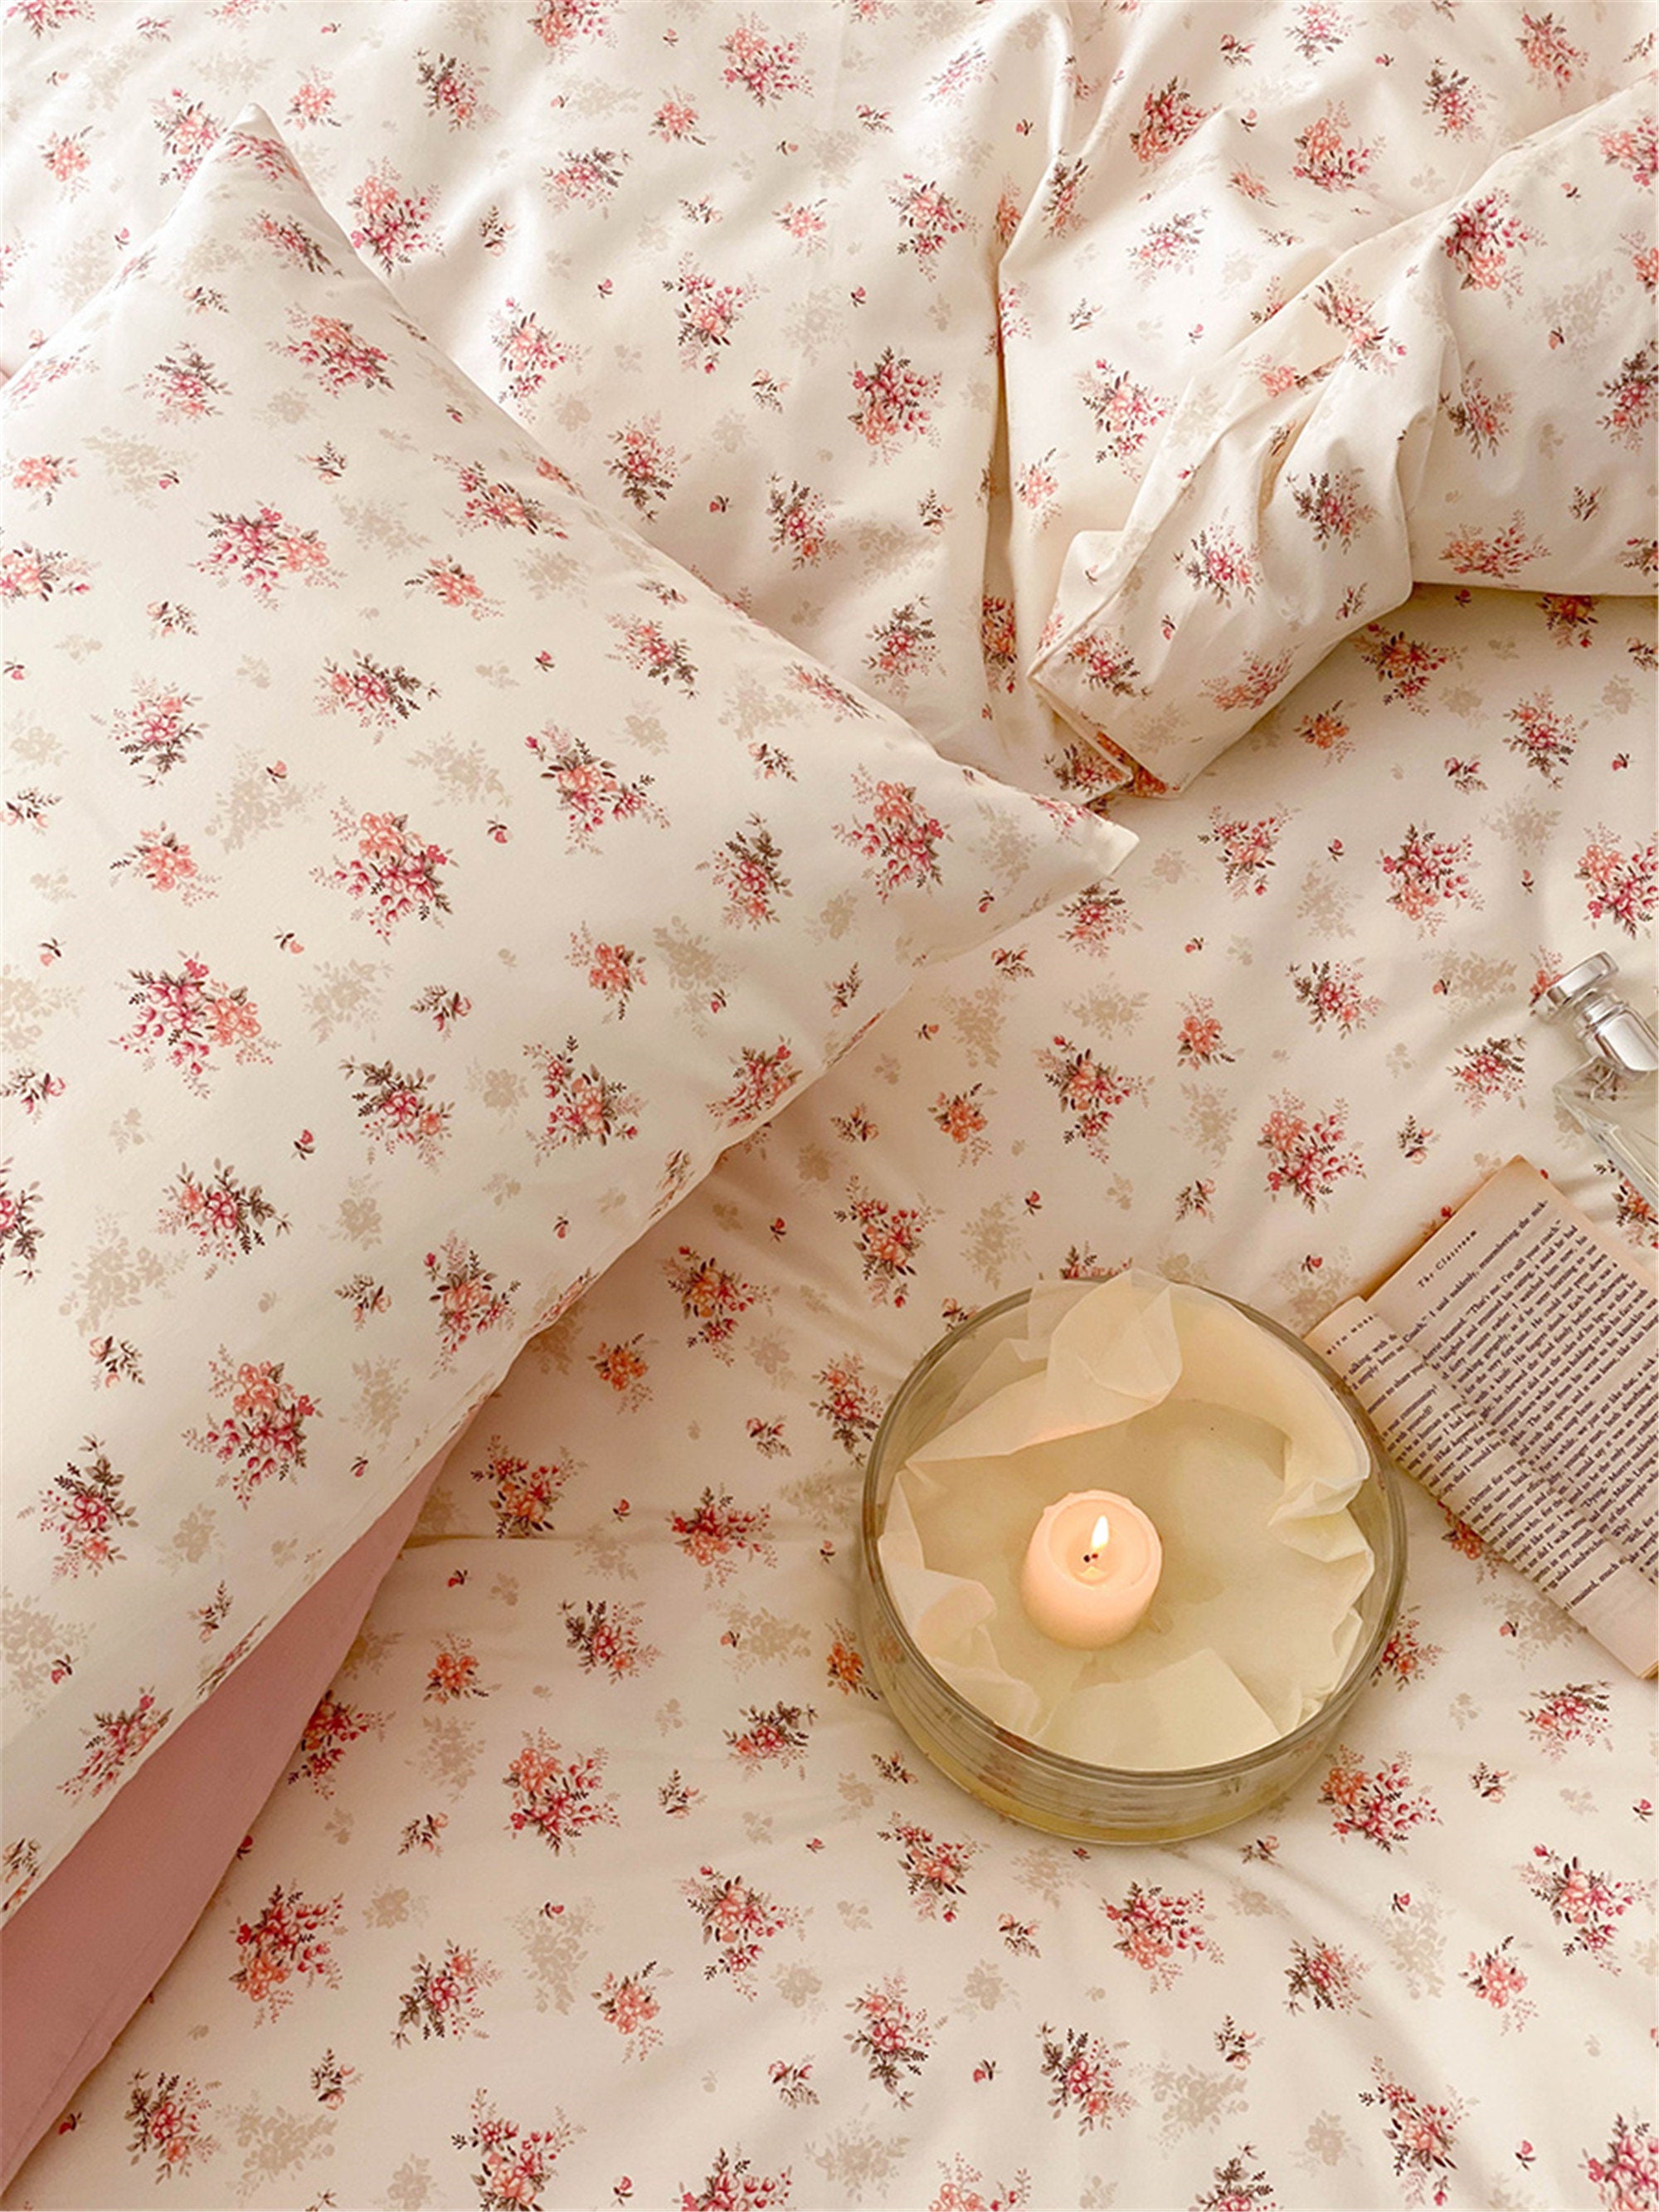 Pink Floral 100% Cotton Duvet Cover Set Cottagecore Decor - Etsy UK